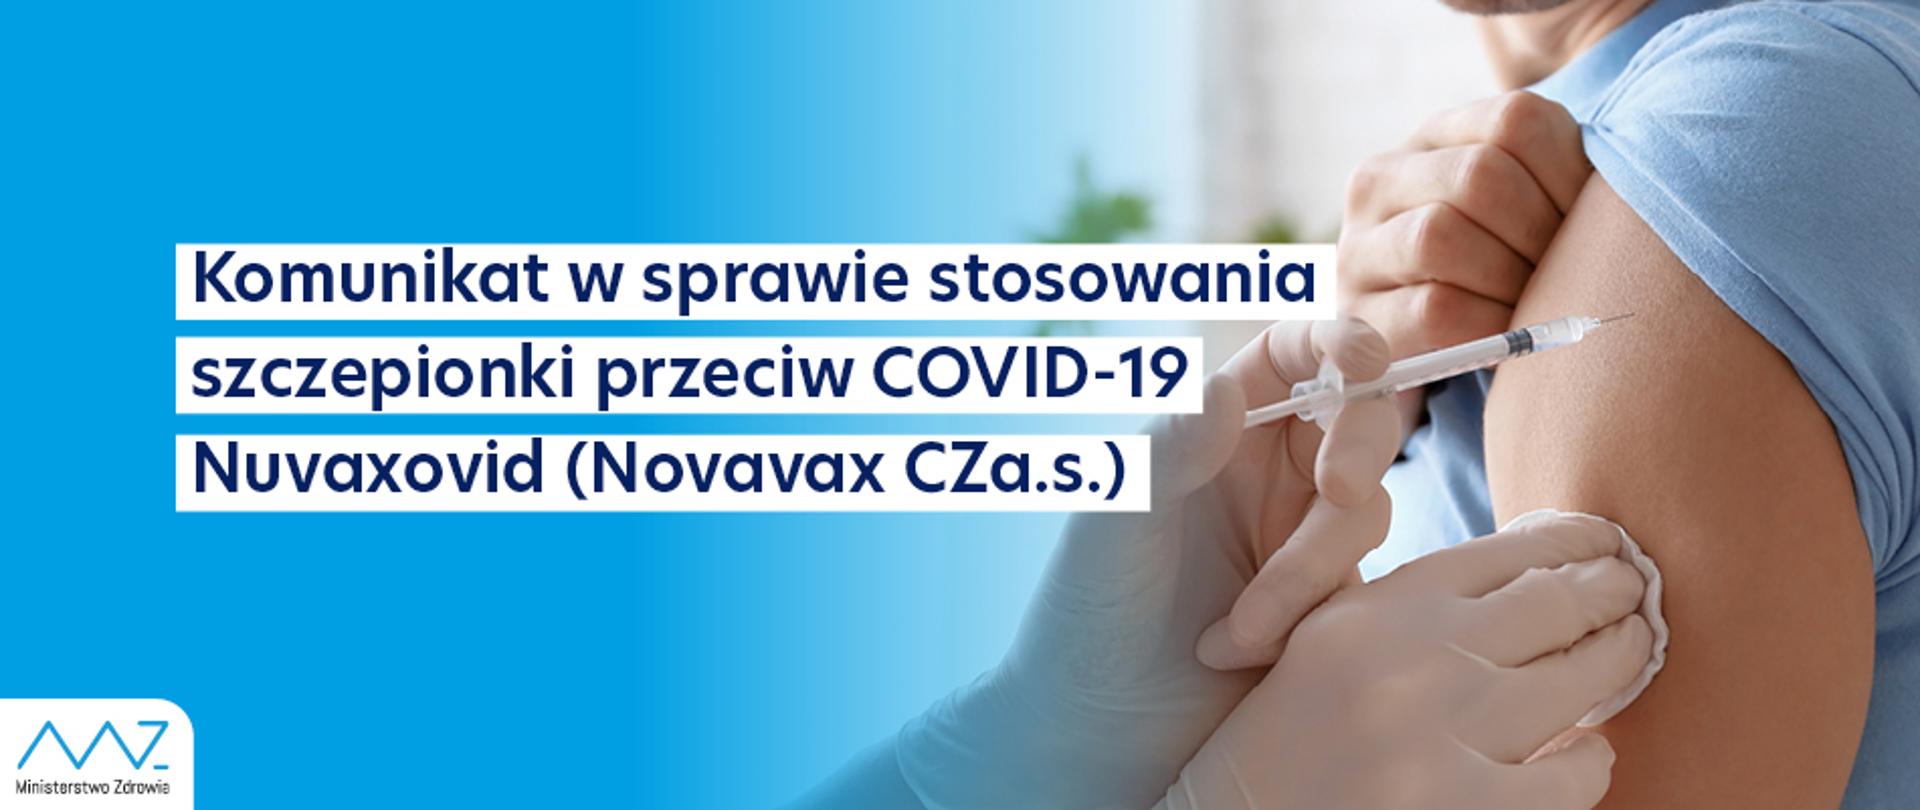 Komunikat w sprawie stosowania szczepionki przeciw Covid-19 Nuvaxovid 